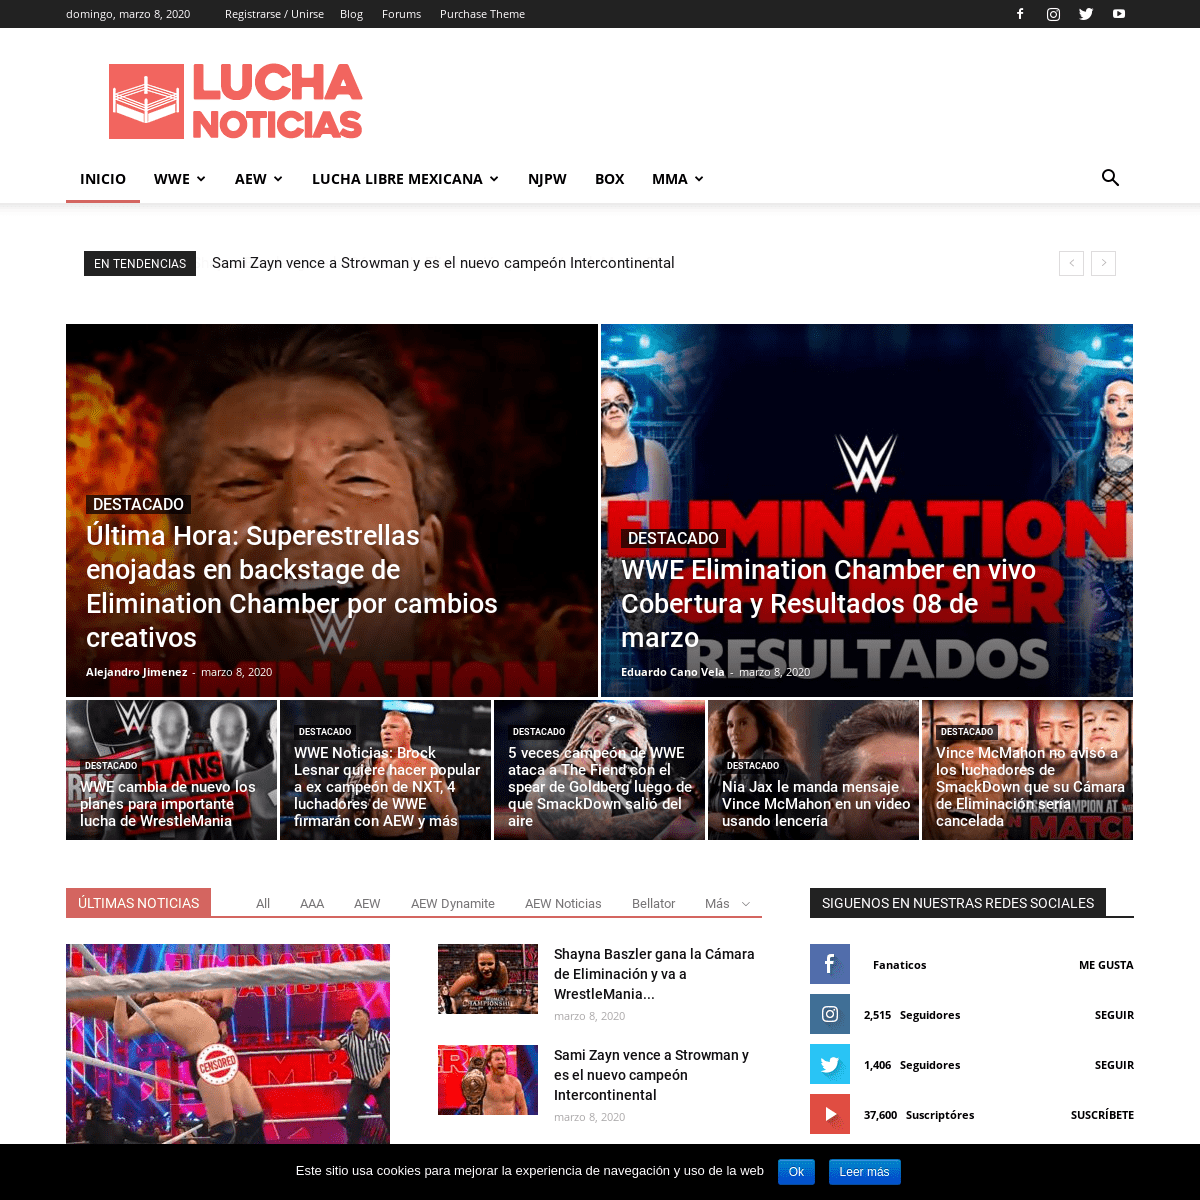 A complete backup of luchanoticias.com